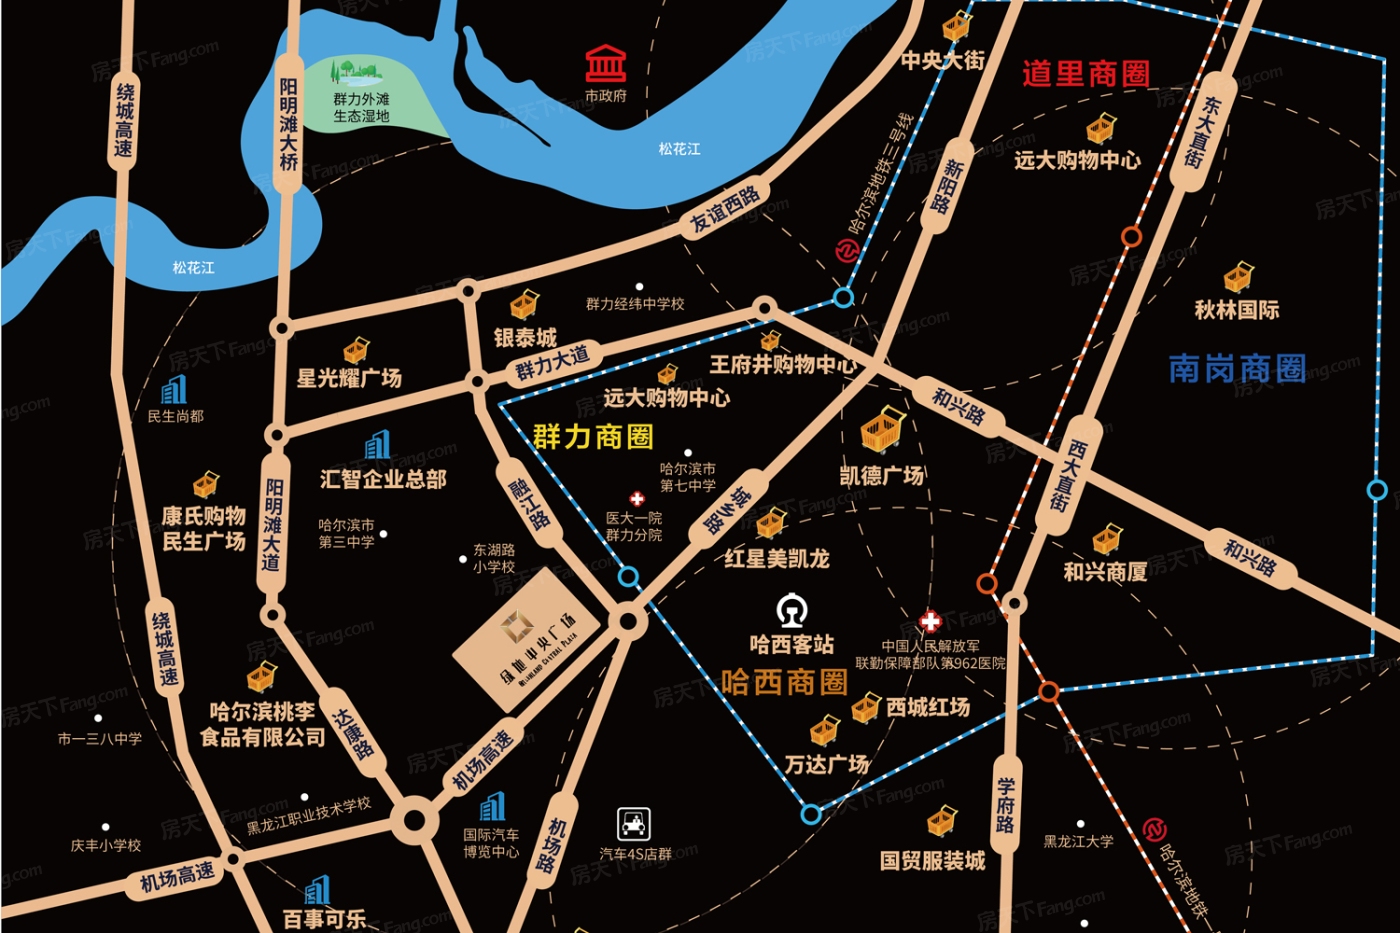 绿地中央广场Ⅱ期·黑龙江空港经济商务中心